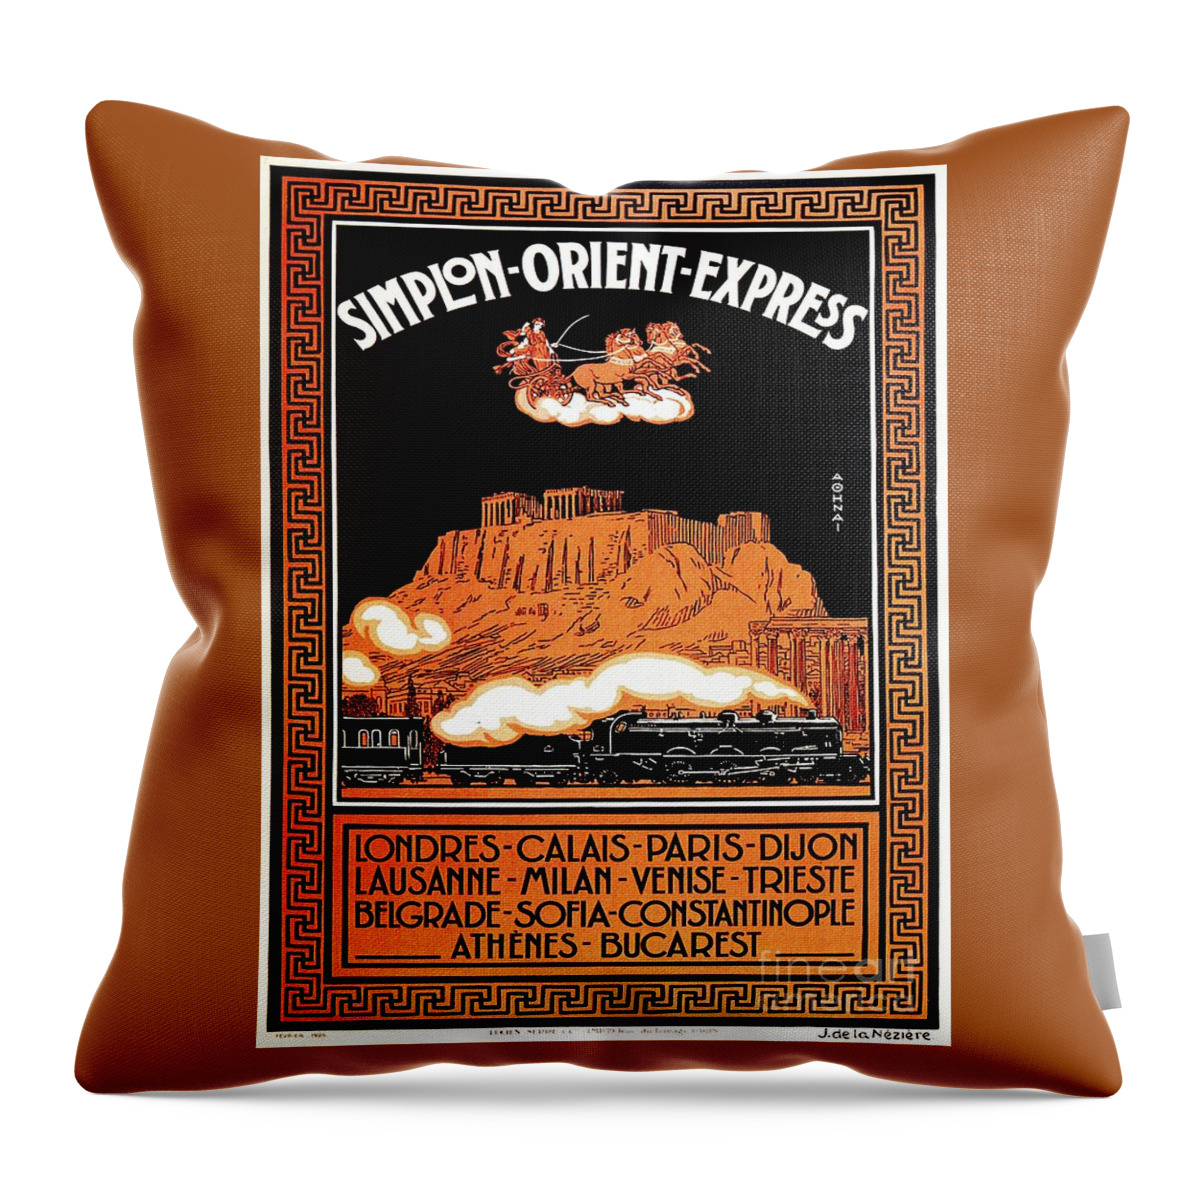 Orient Express Throw Pillow featuring the digital art Art Deco Orient Express advertising Athens by Heidi De Leeuw